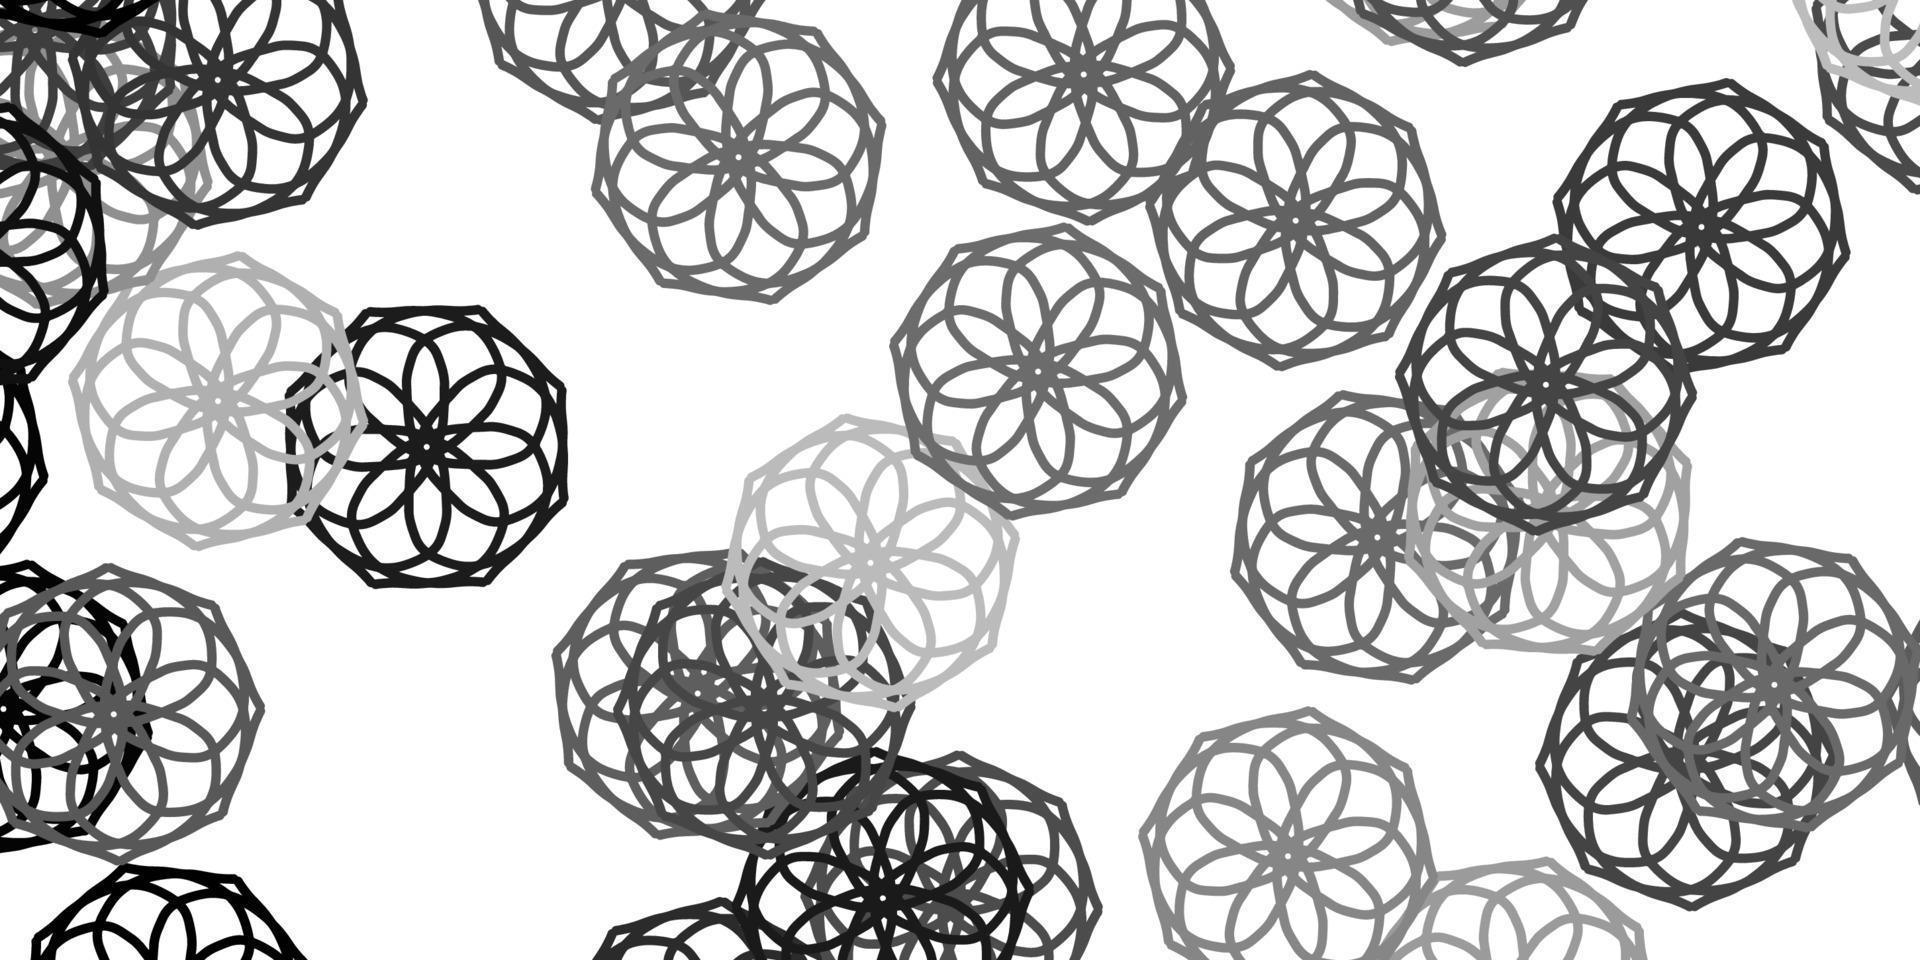 modello di doodle vettoriale grigio chiaro con fiori.